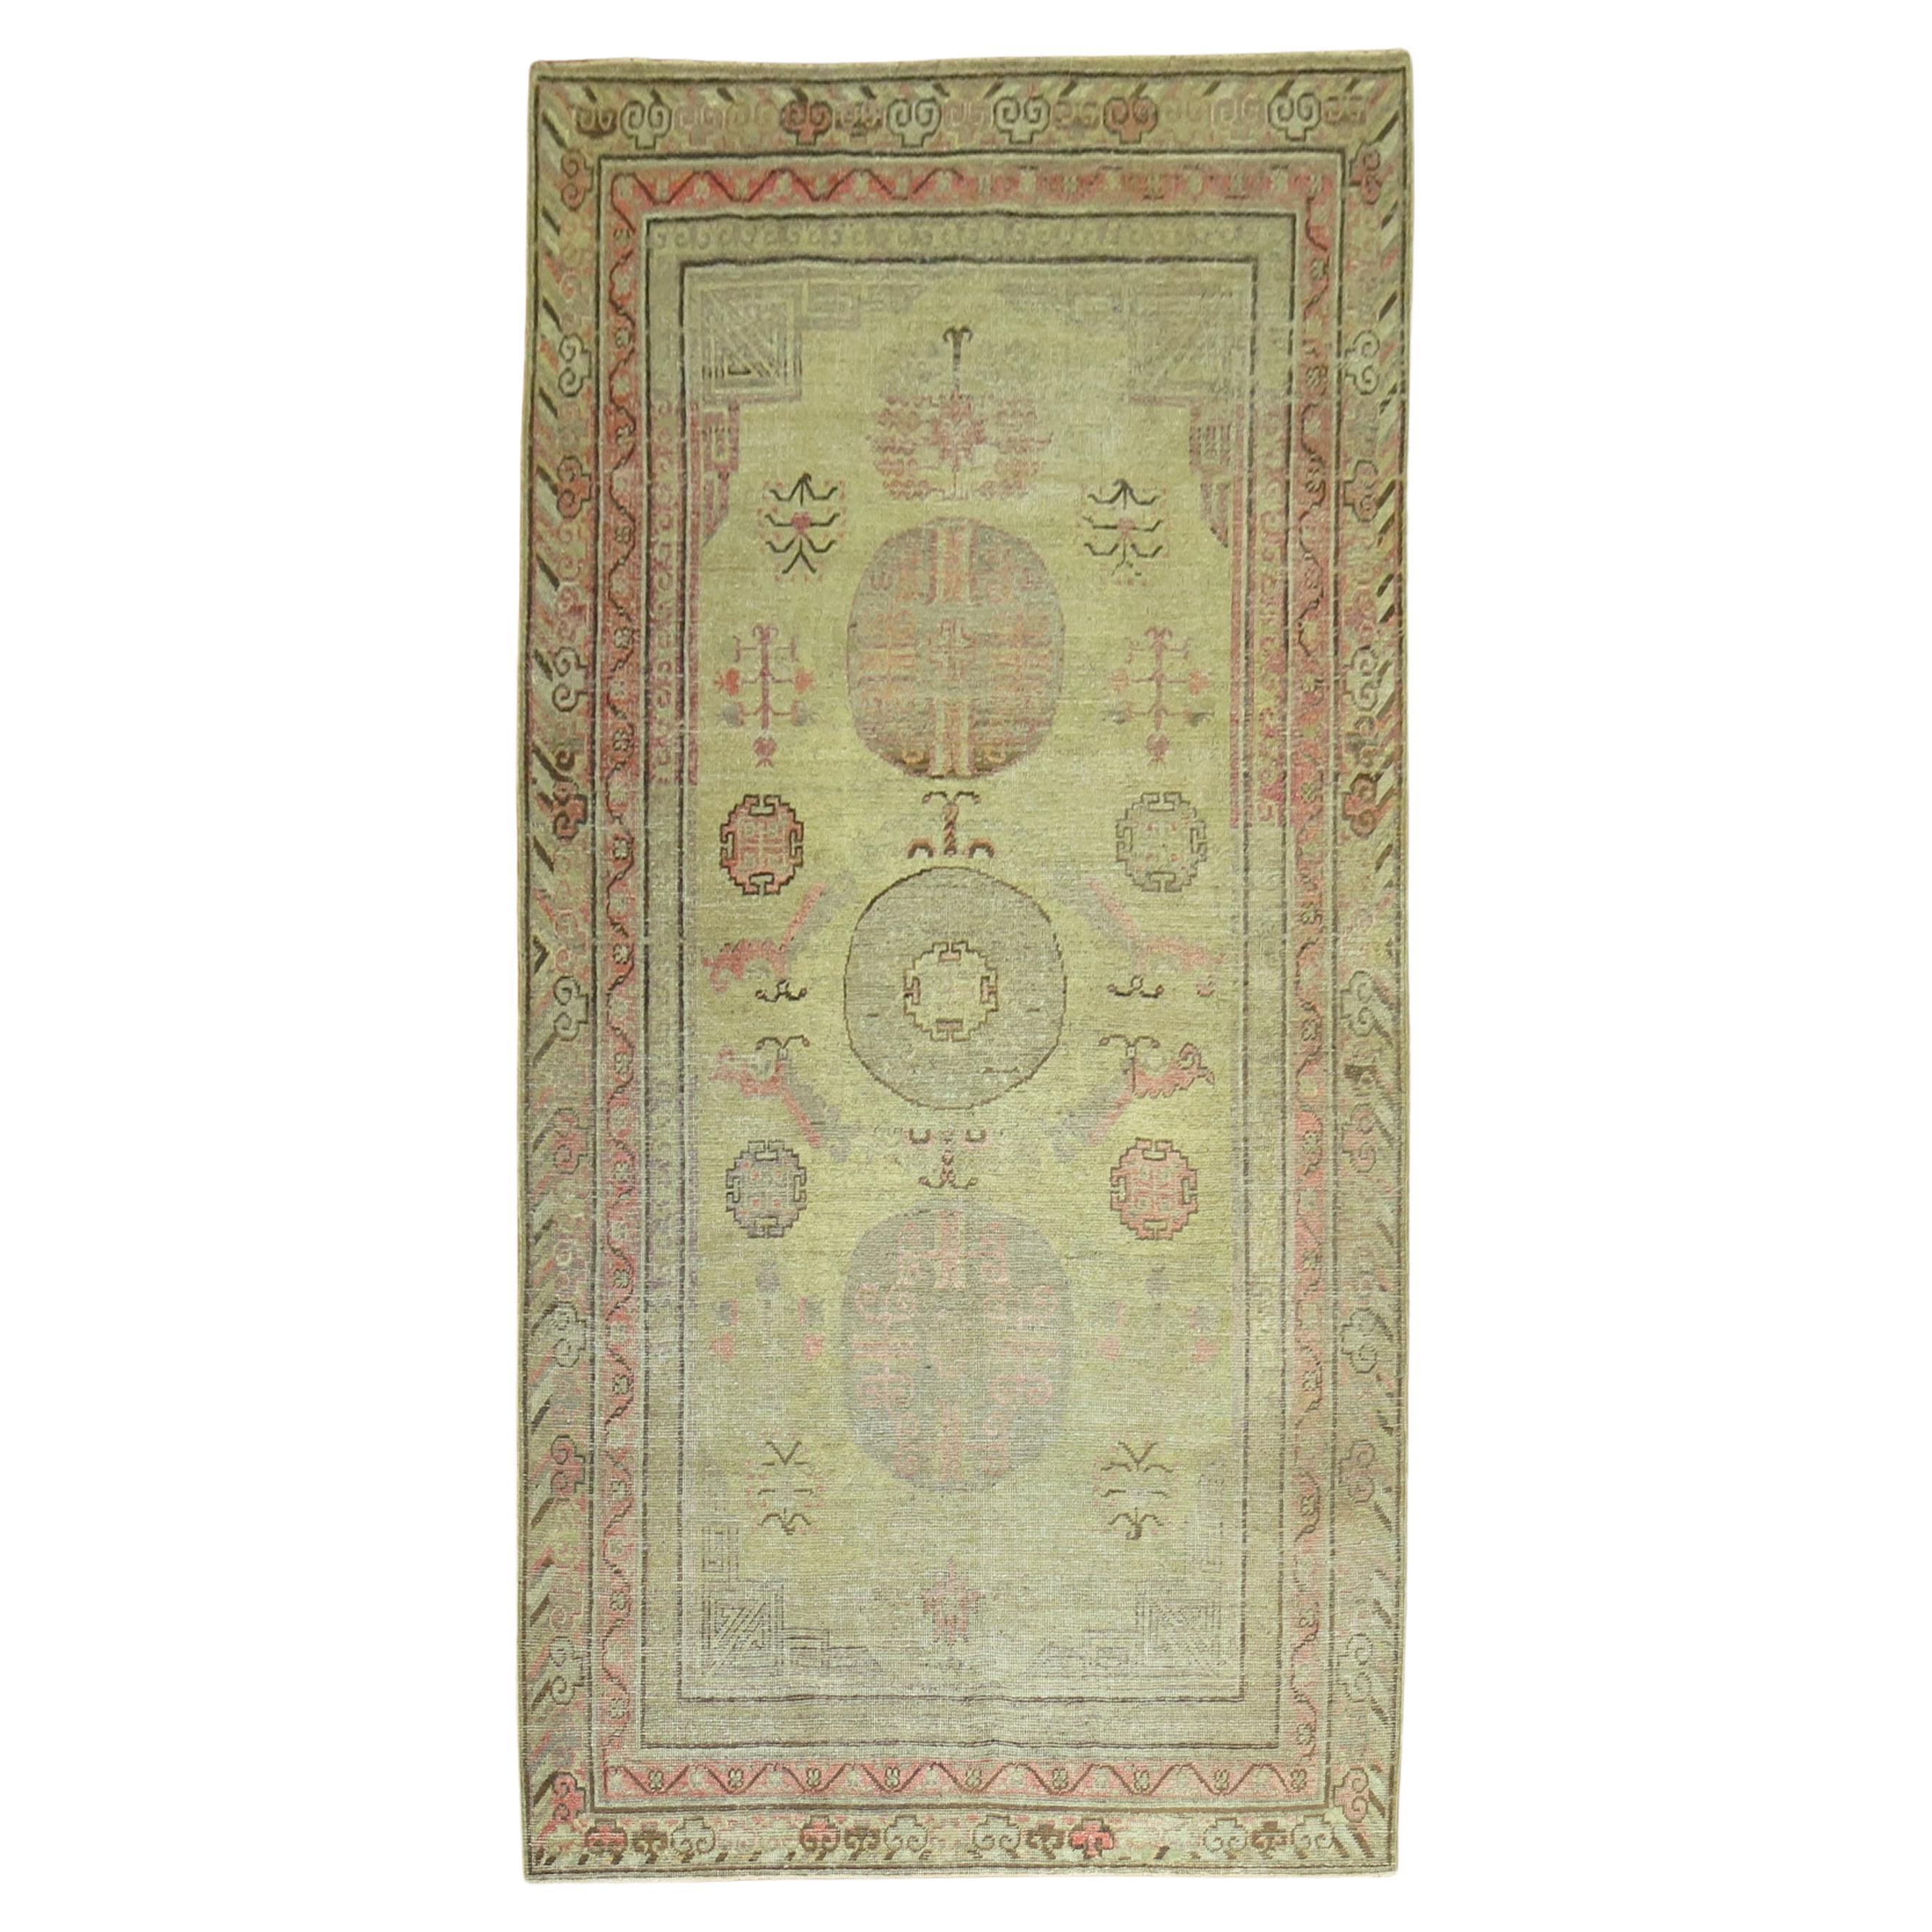 Fin du XIXe siècle, tapis Khotan ancien couleur moutarde